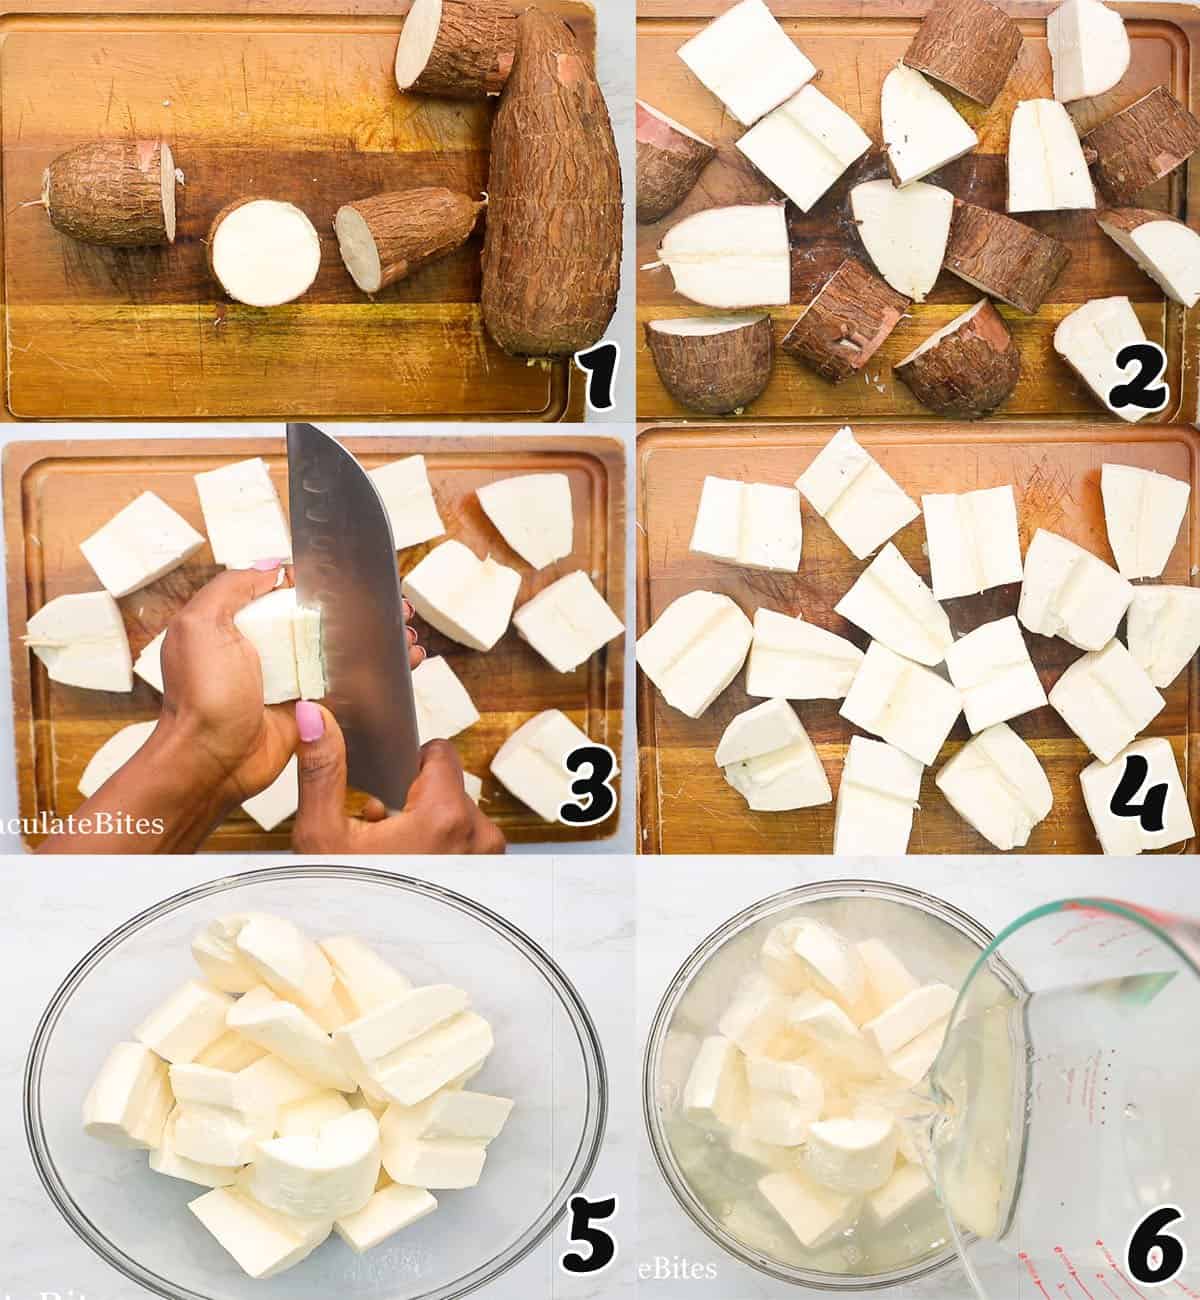 Preparing the cassava for cassava fufu